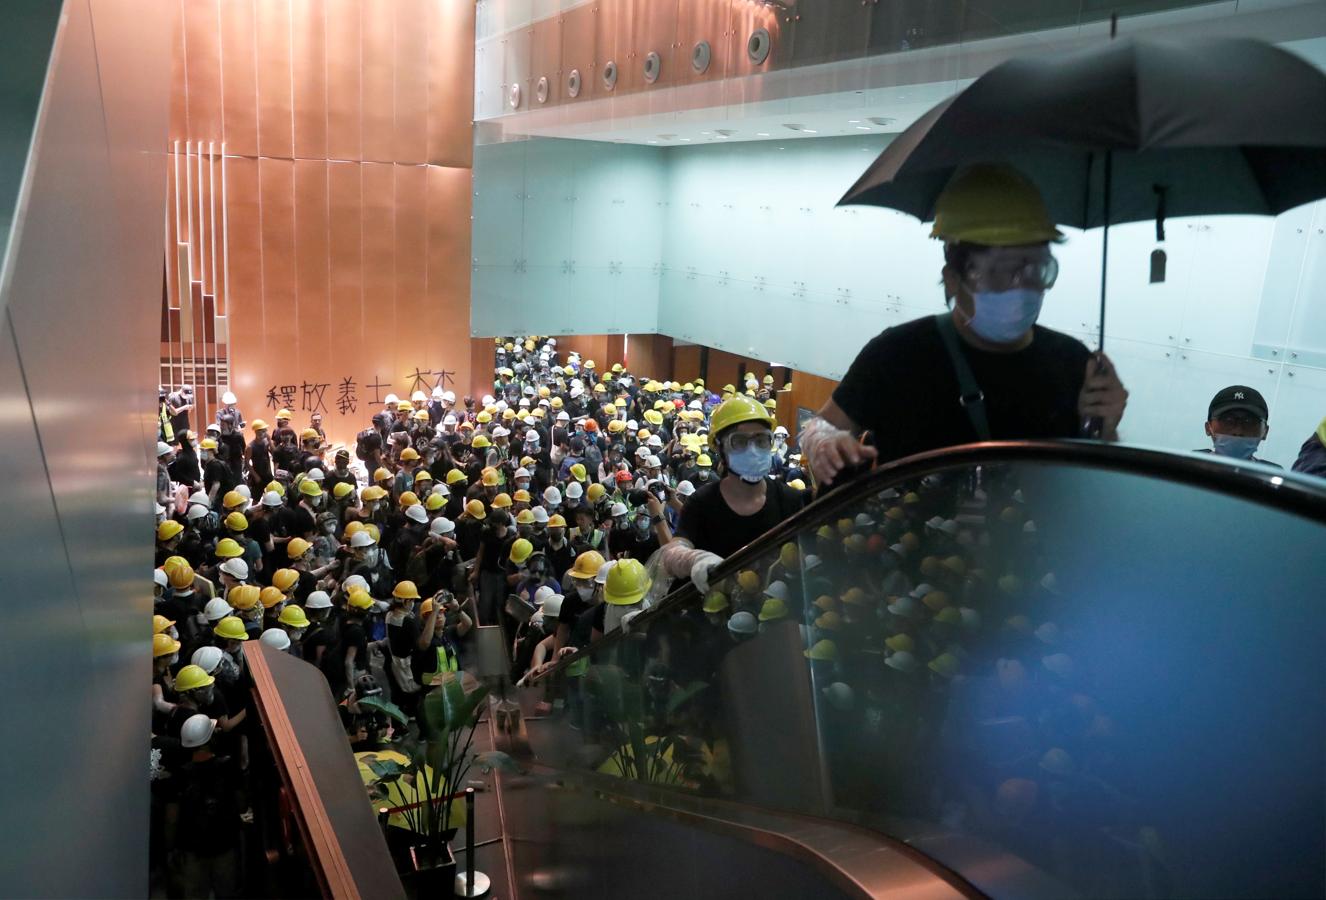 Los manifestantes con cascos de obreros amarillos y blancos suben las escaleras mecánicas que dan paso a la Cámara. 